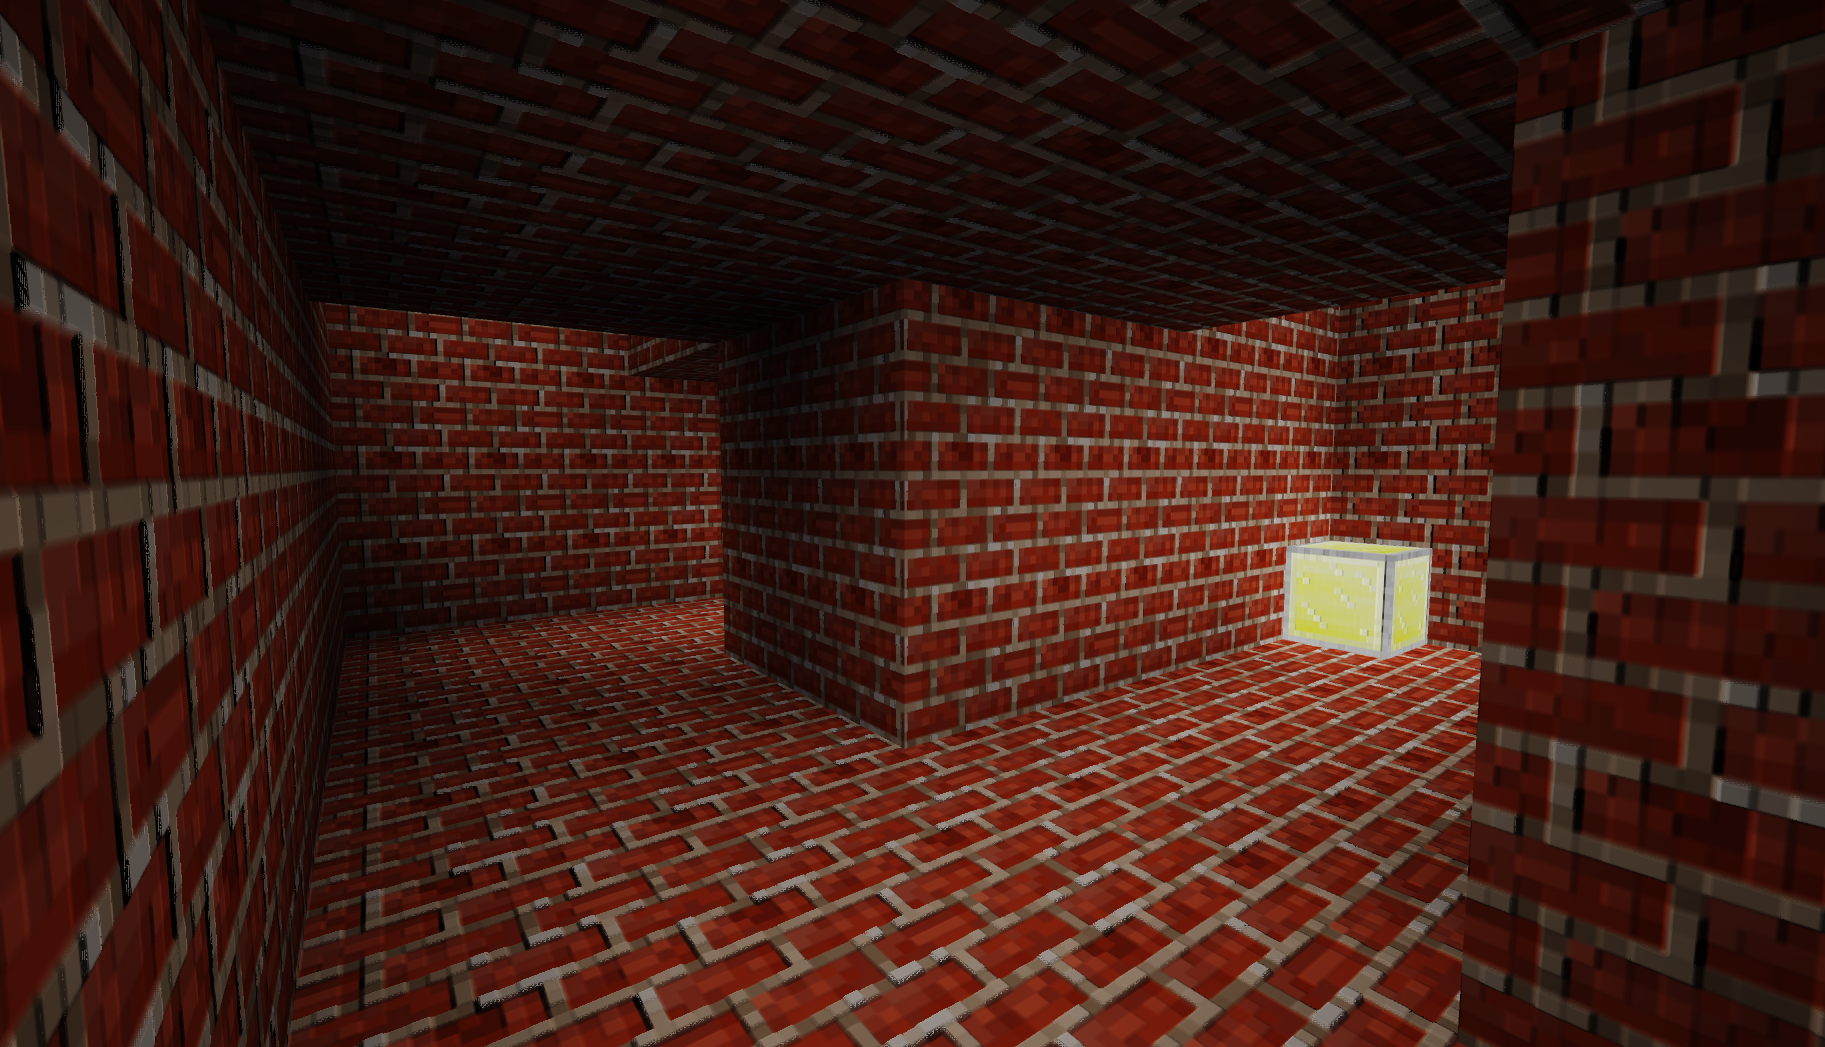 The inside of a 3D maze